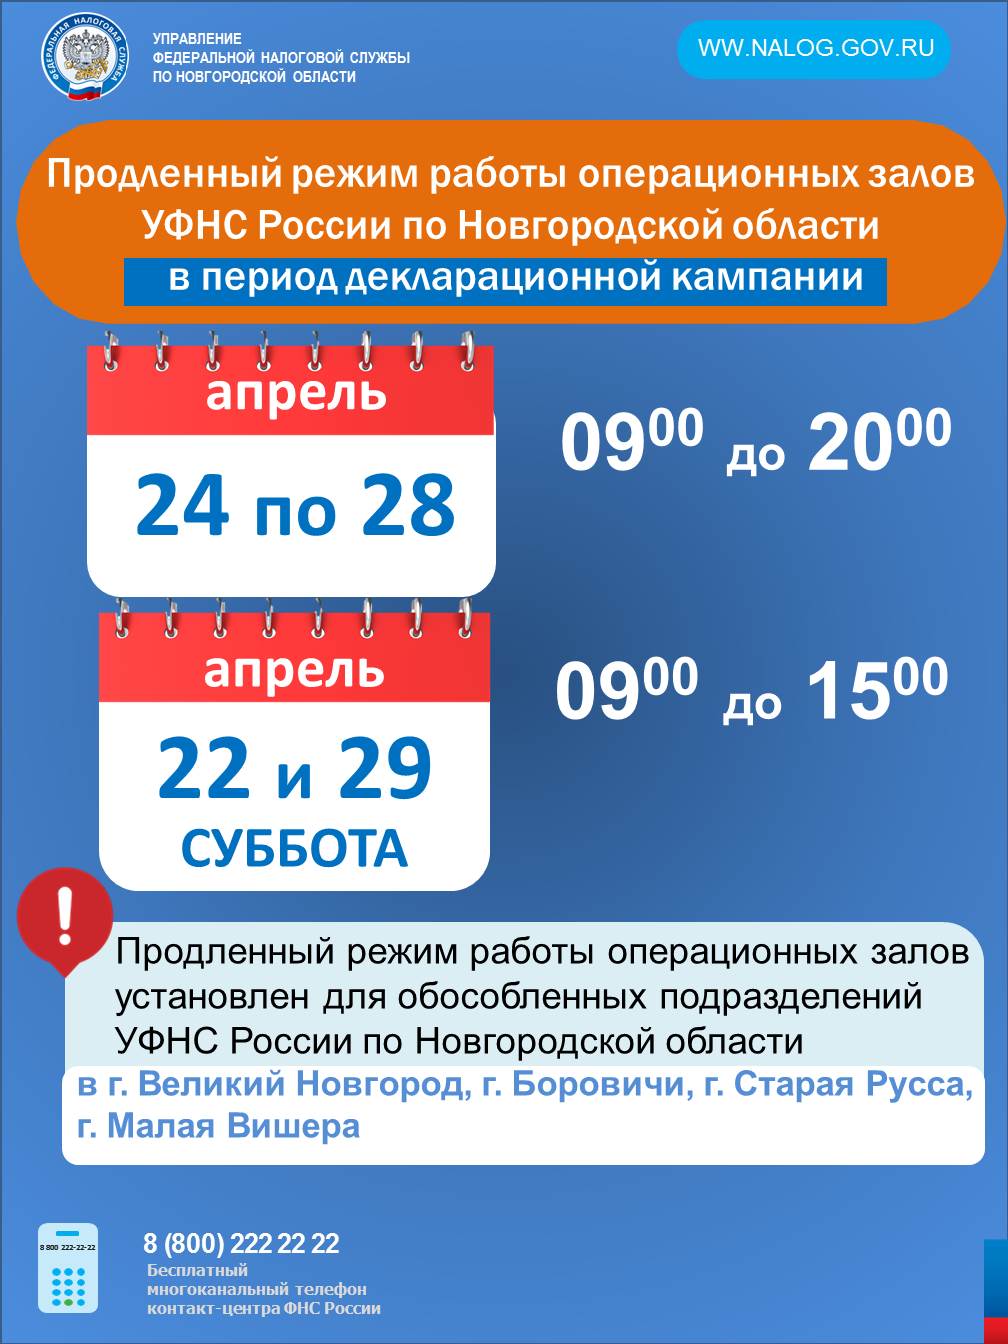 УФНС России по Новгородской области в апреле изменен график работы  операционных залов.